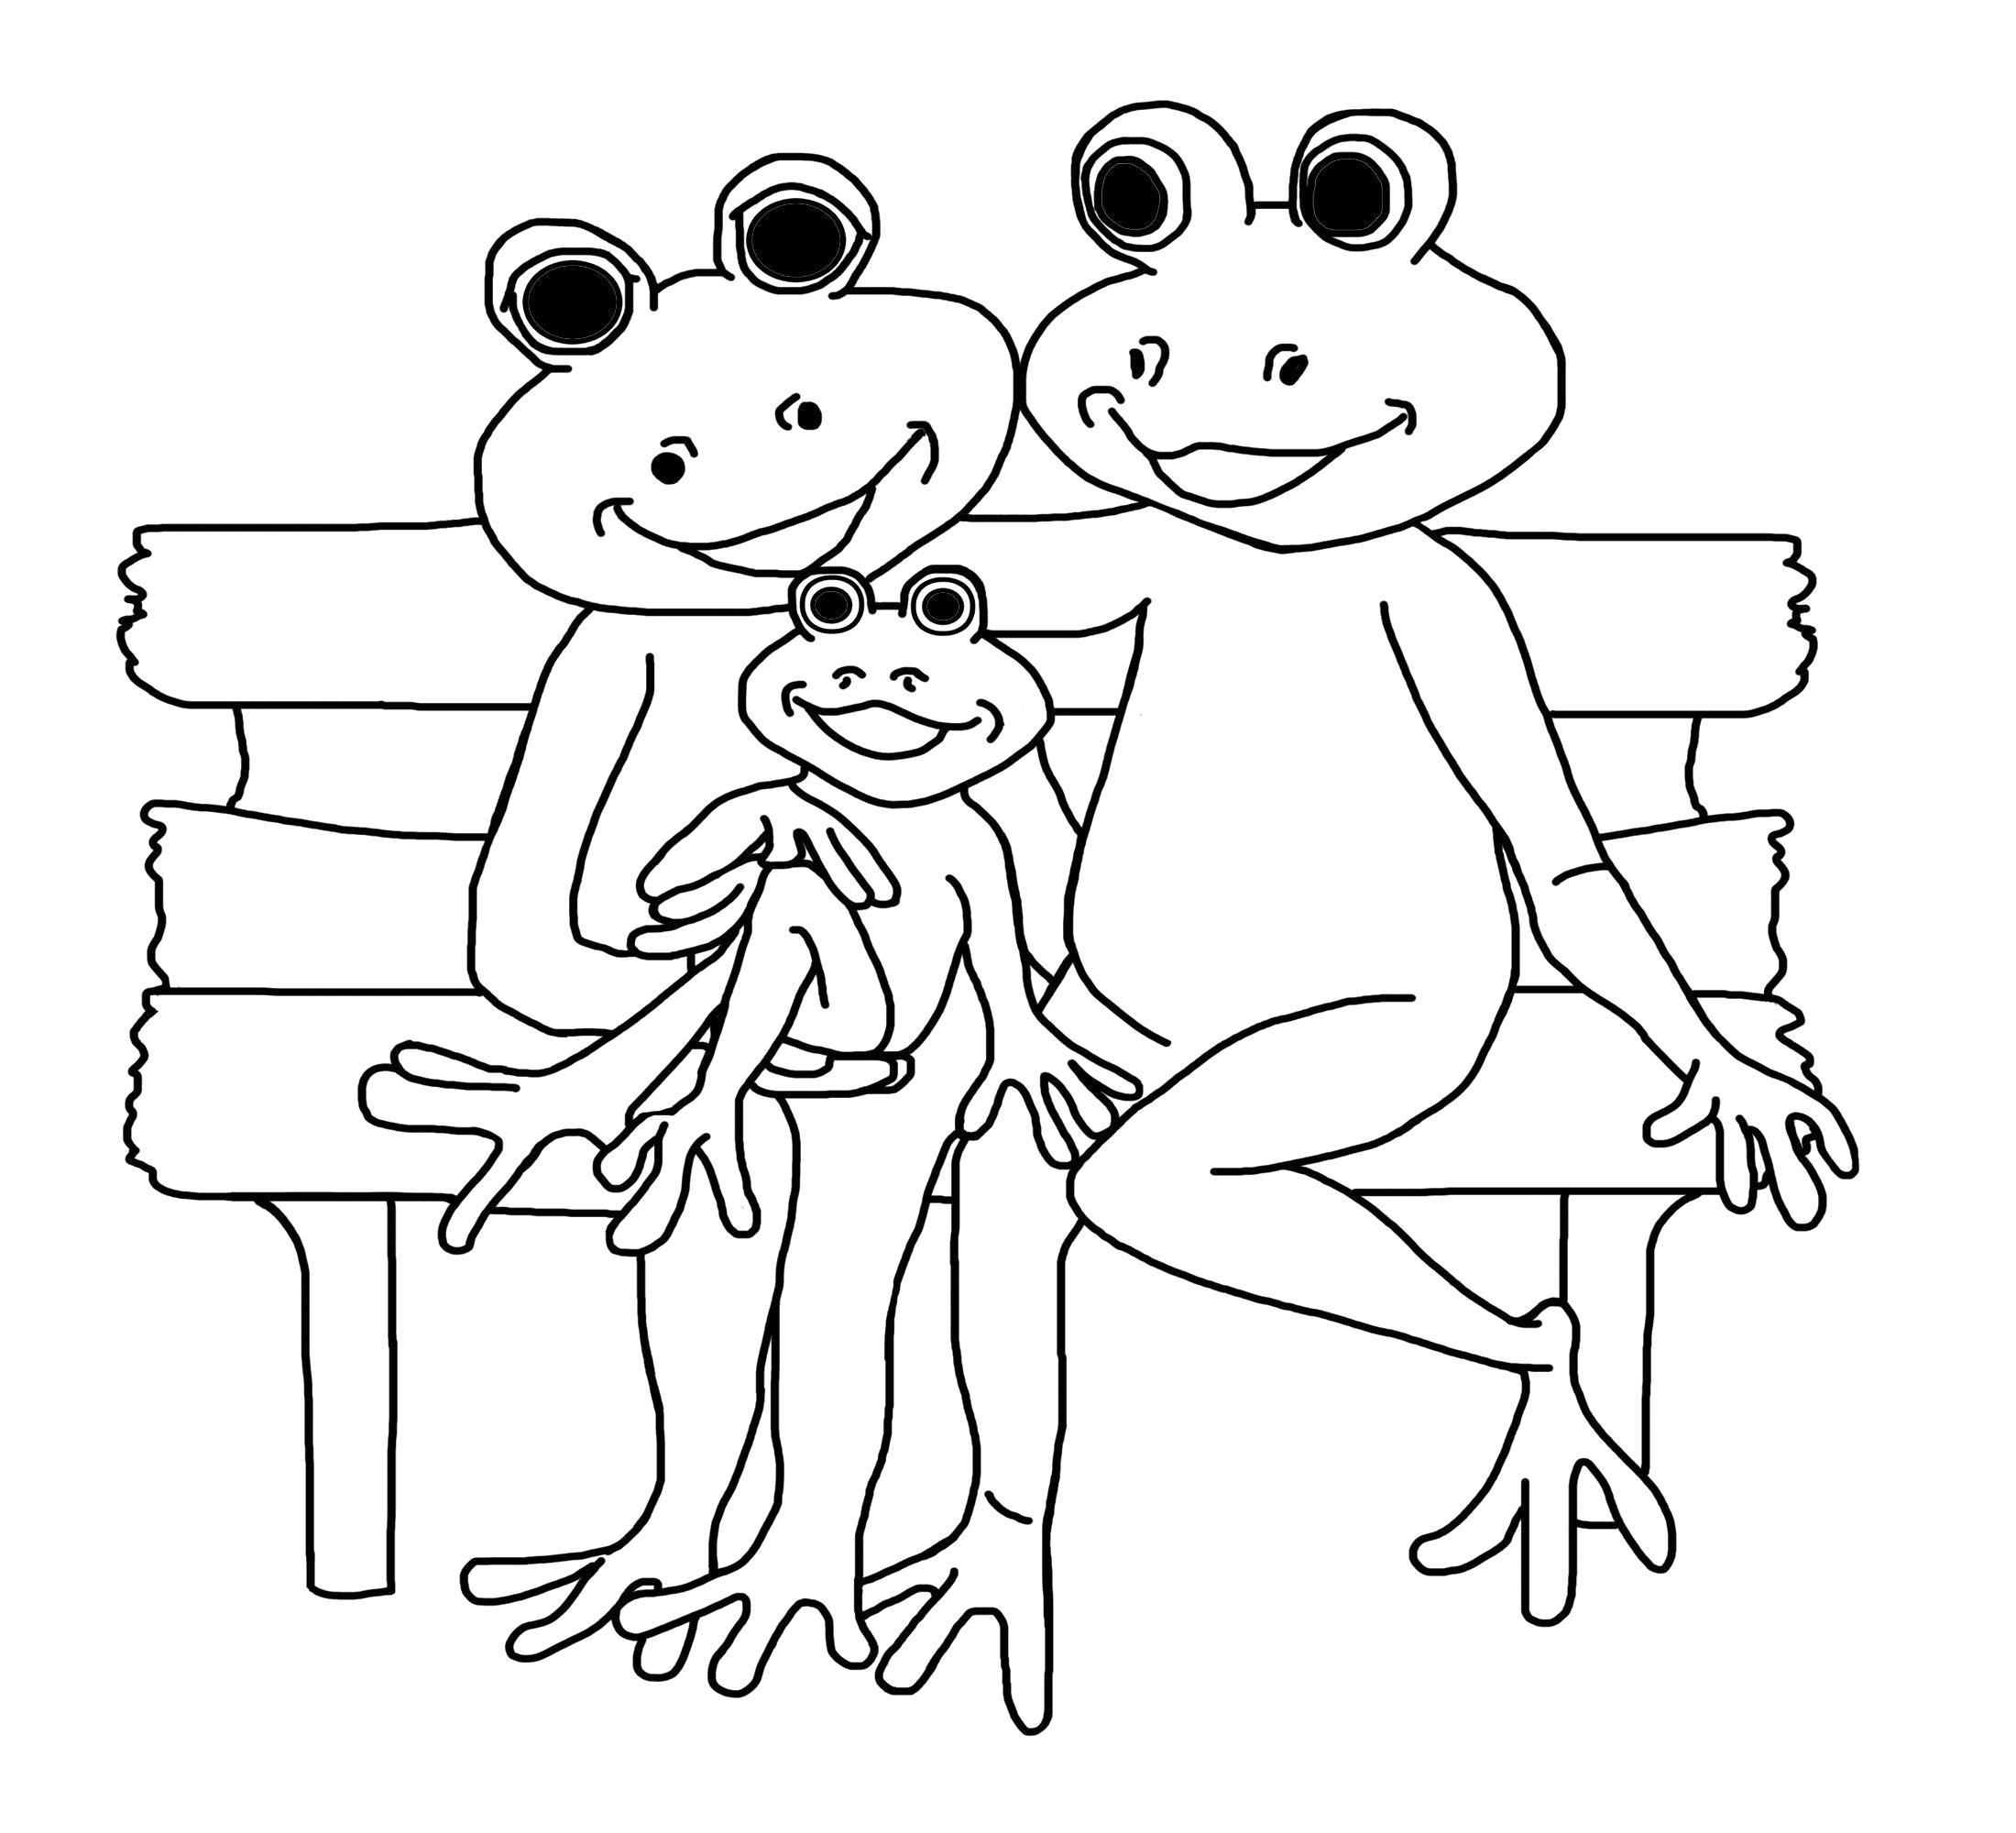 Название: Раскраска картинка лягушка раскраска для детей. Категория: лягушка. Теги: лягушка.